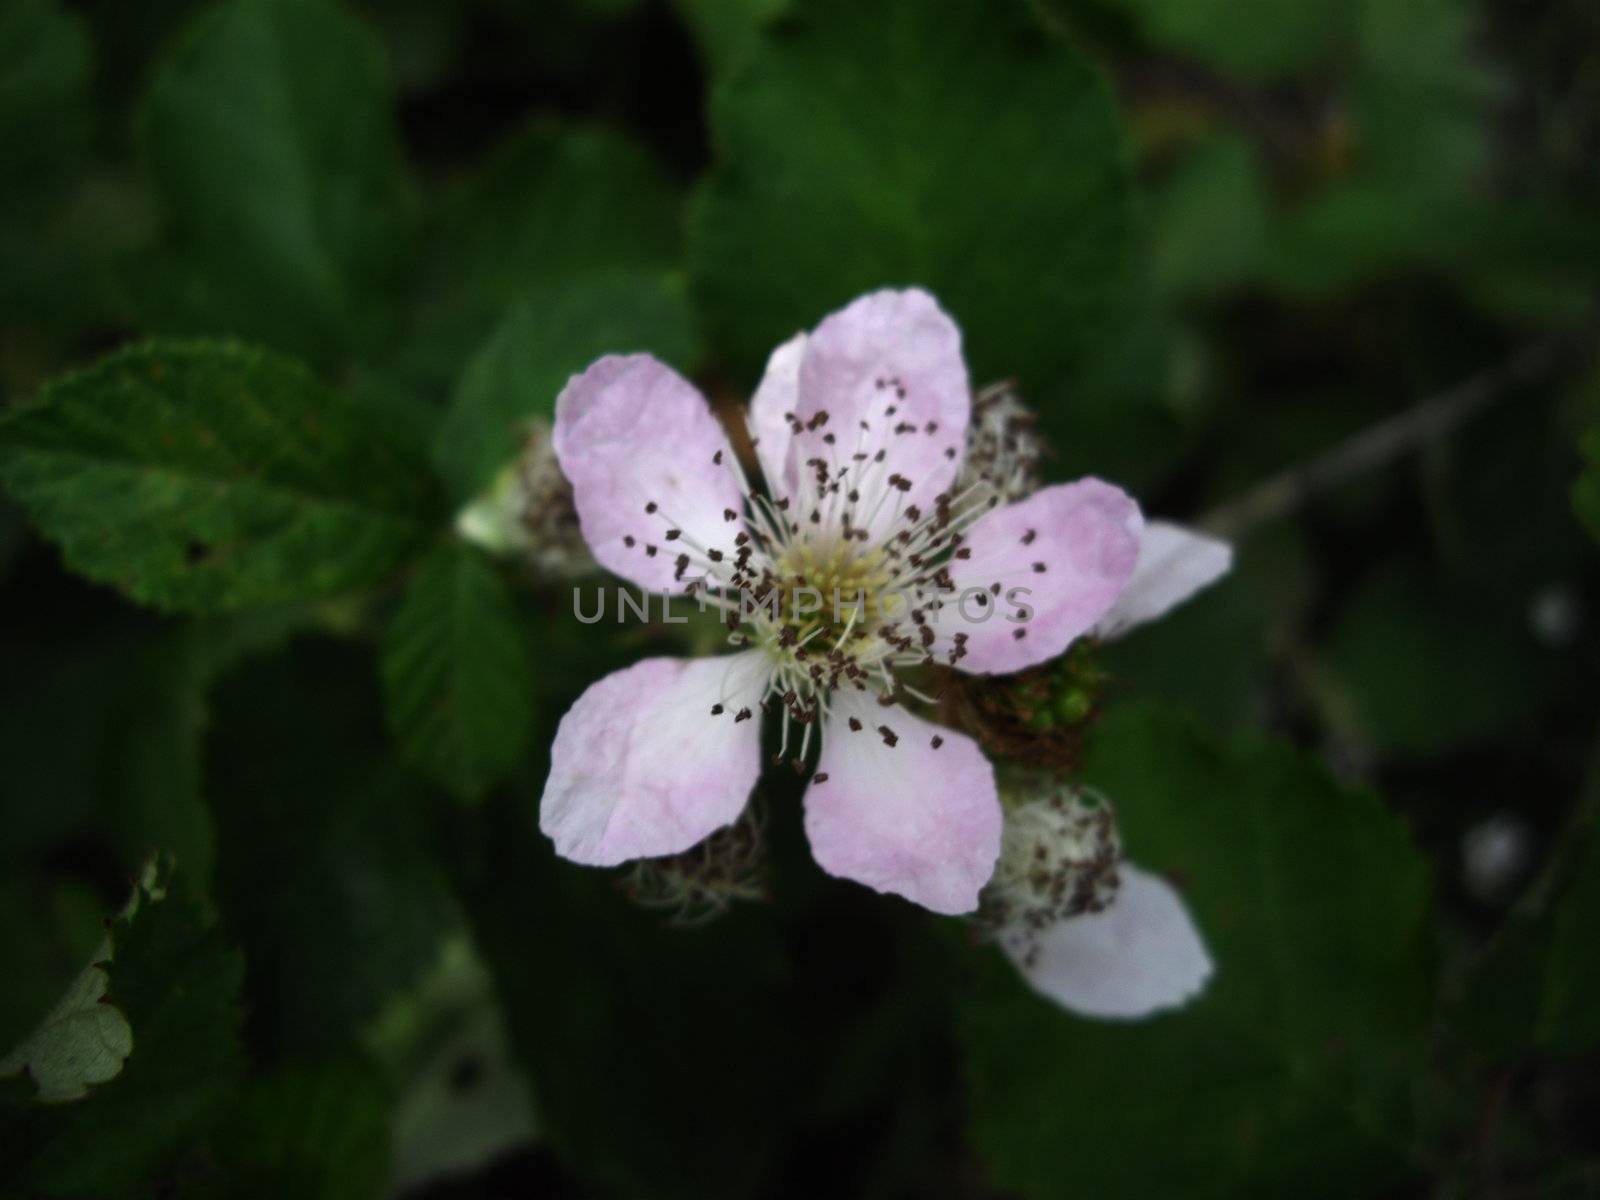 Flower of blackberry by Elet